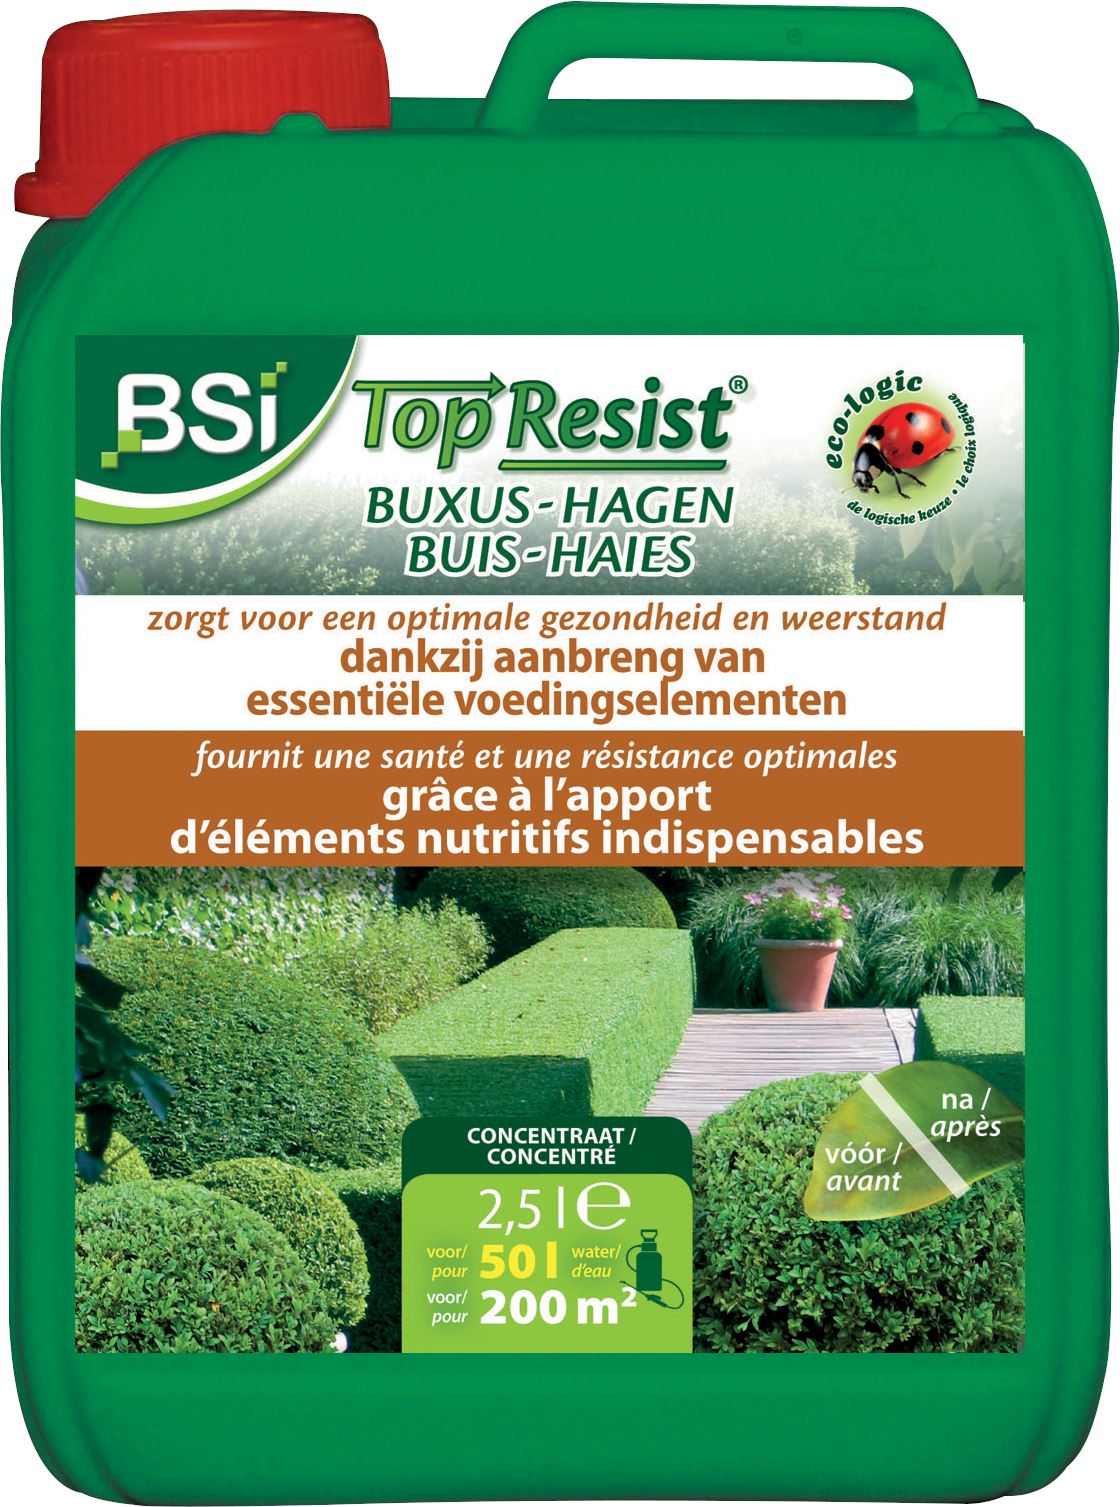 top-resist-buxus-hagen-concentraat-2-5L